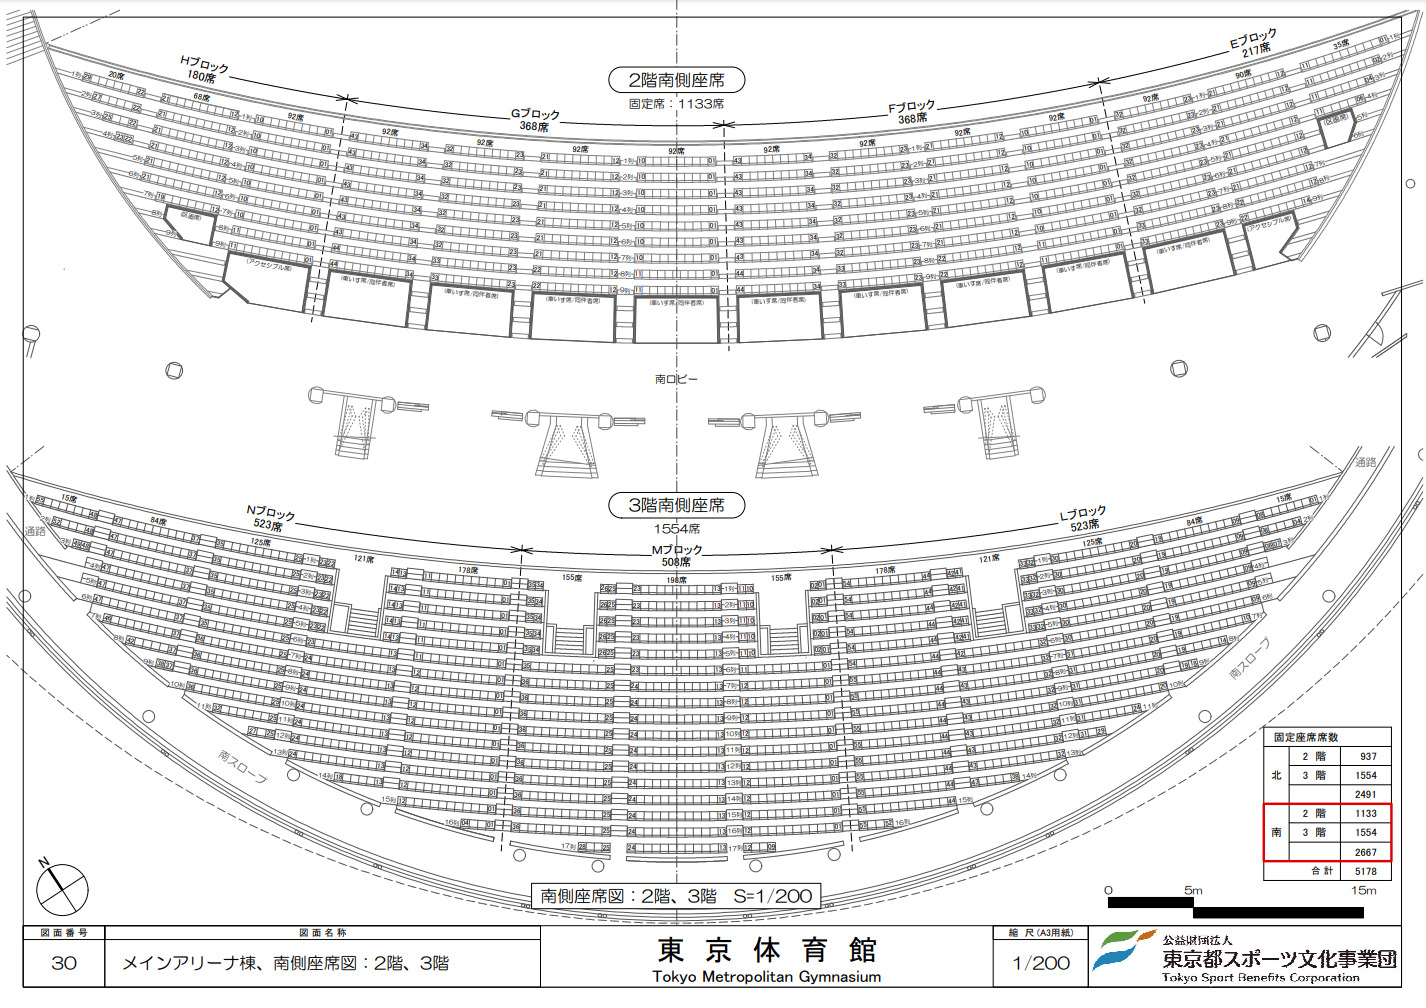 東京体育館メインアリーナ(南側)の座席表